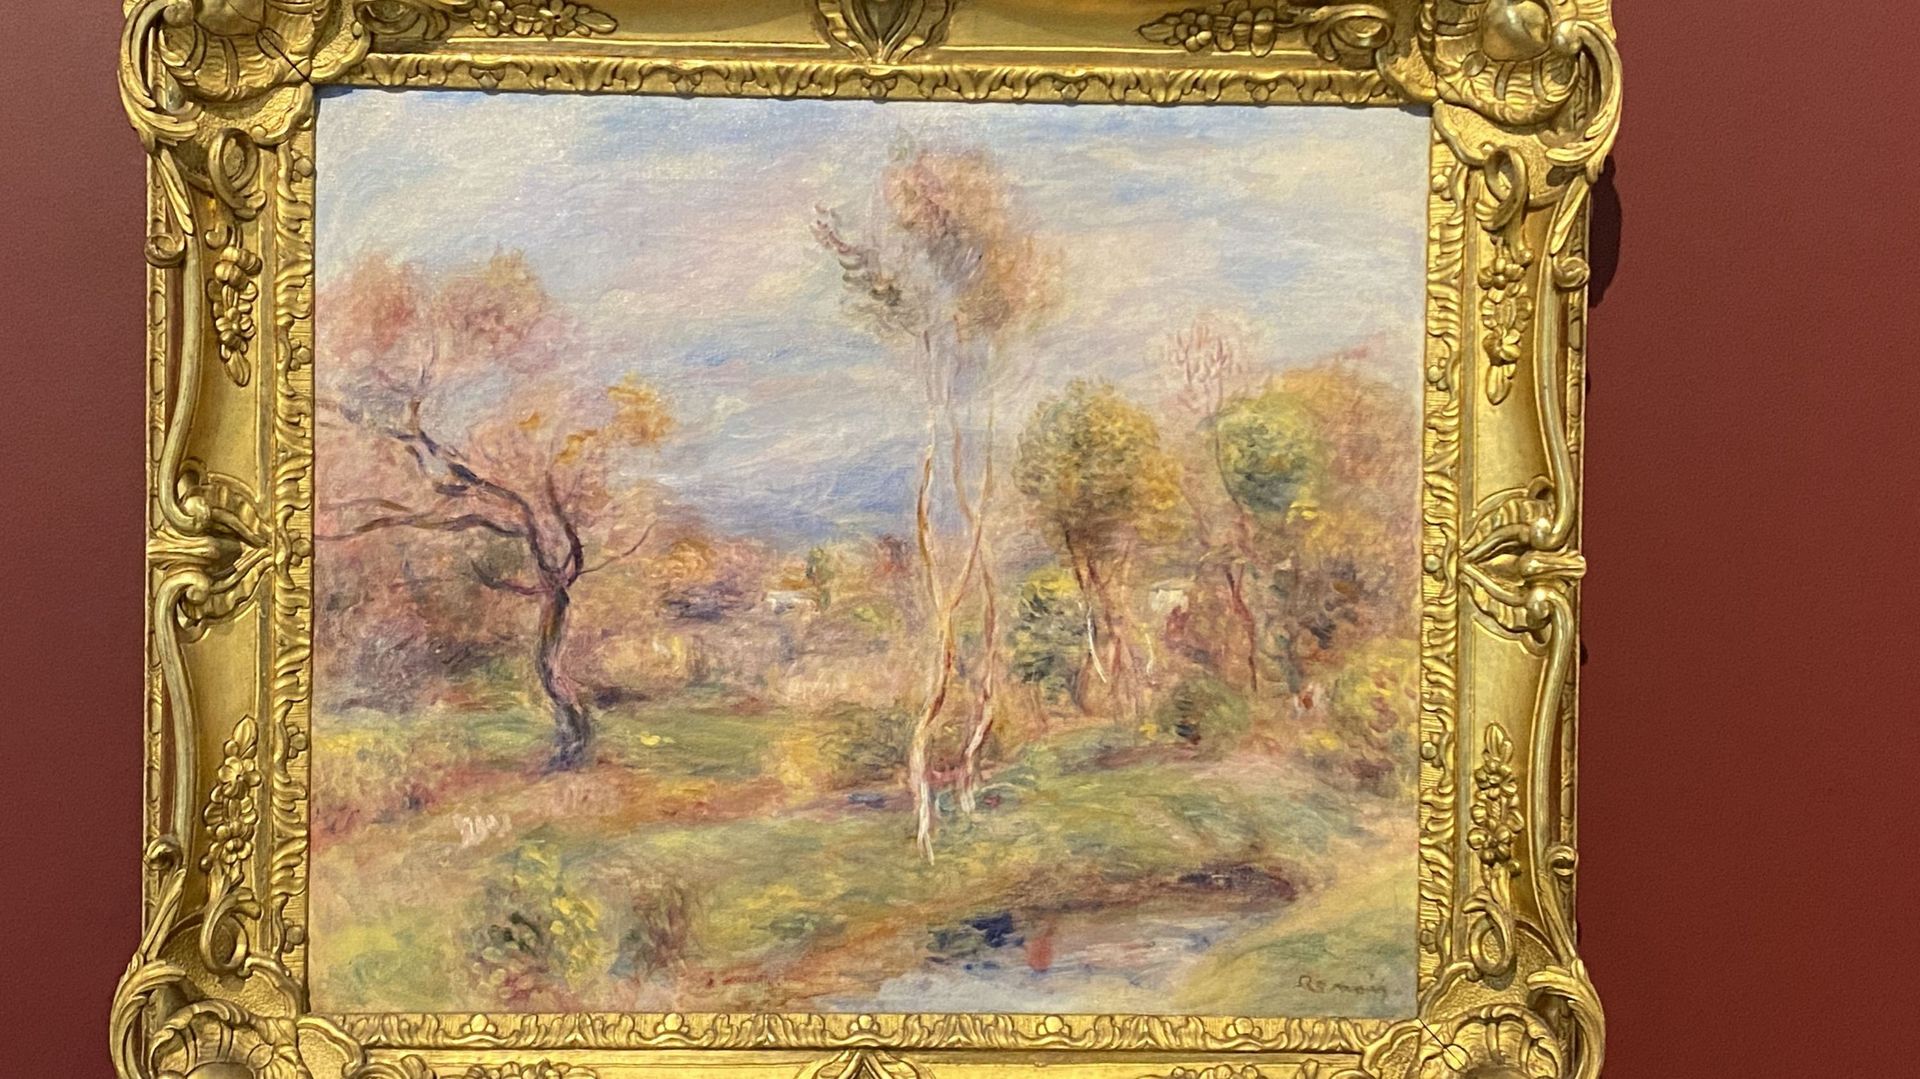 Egalement à voir, Antibes (ou Les oliviers de Cagnes) de Renoir.